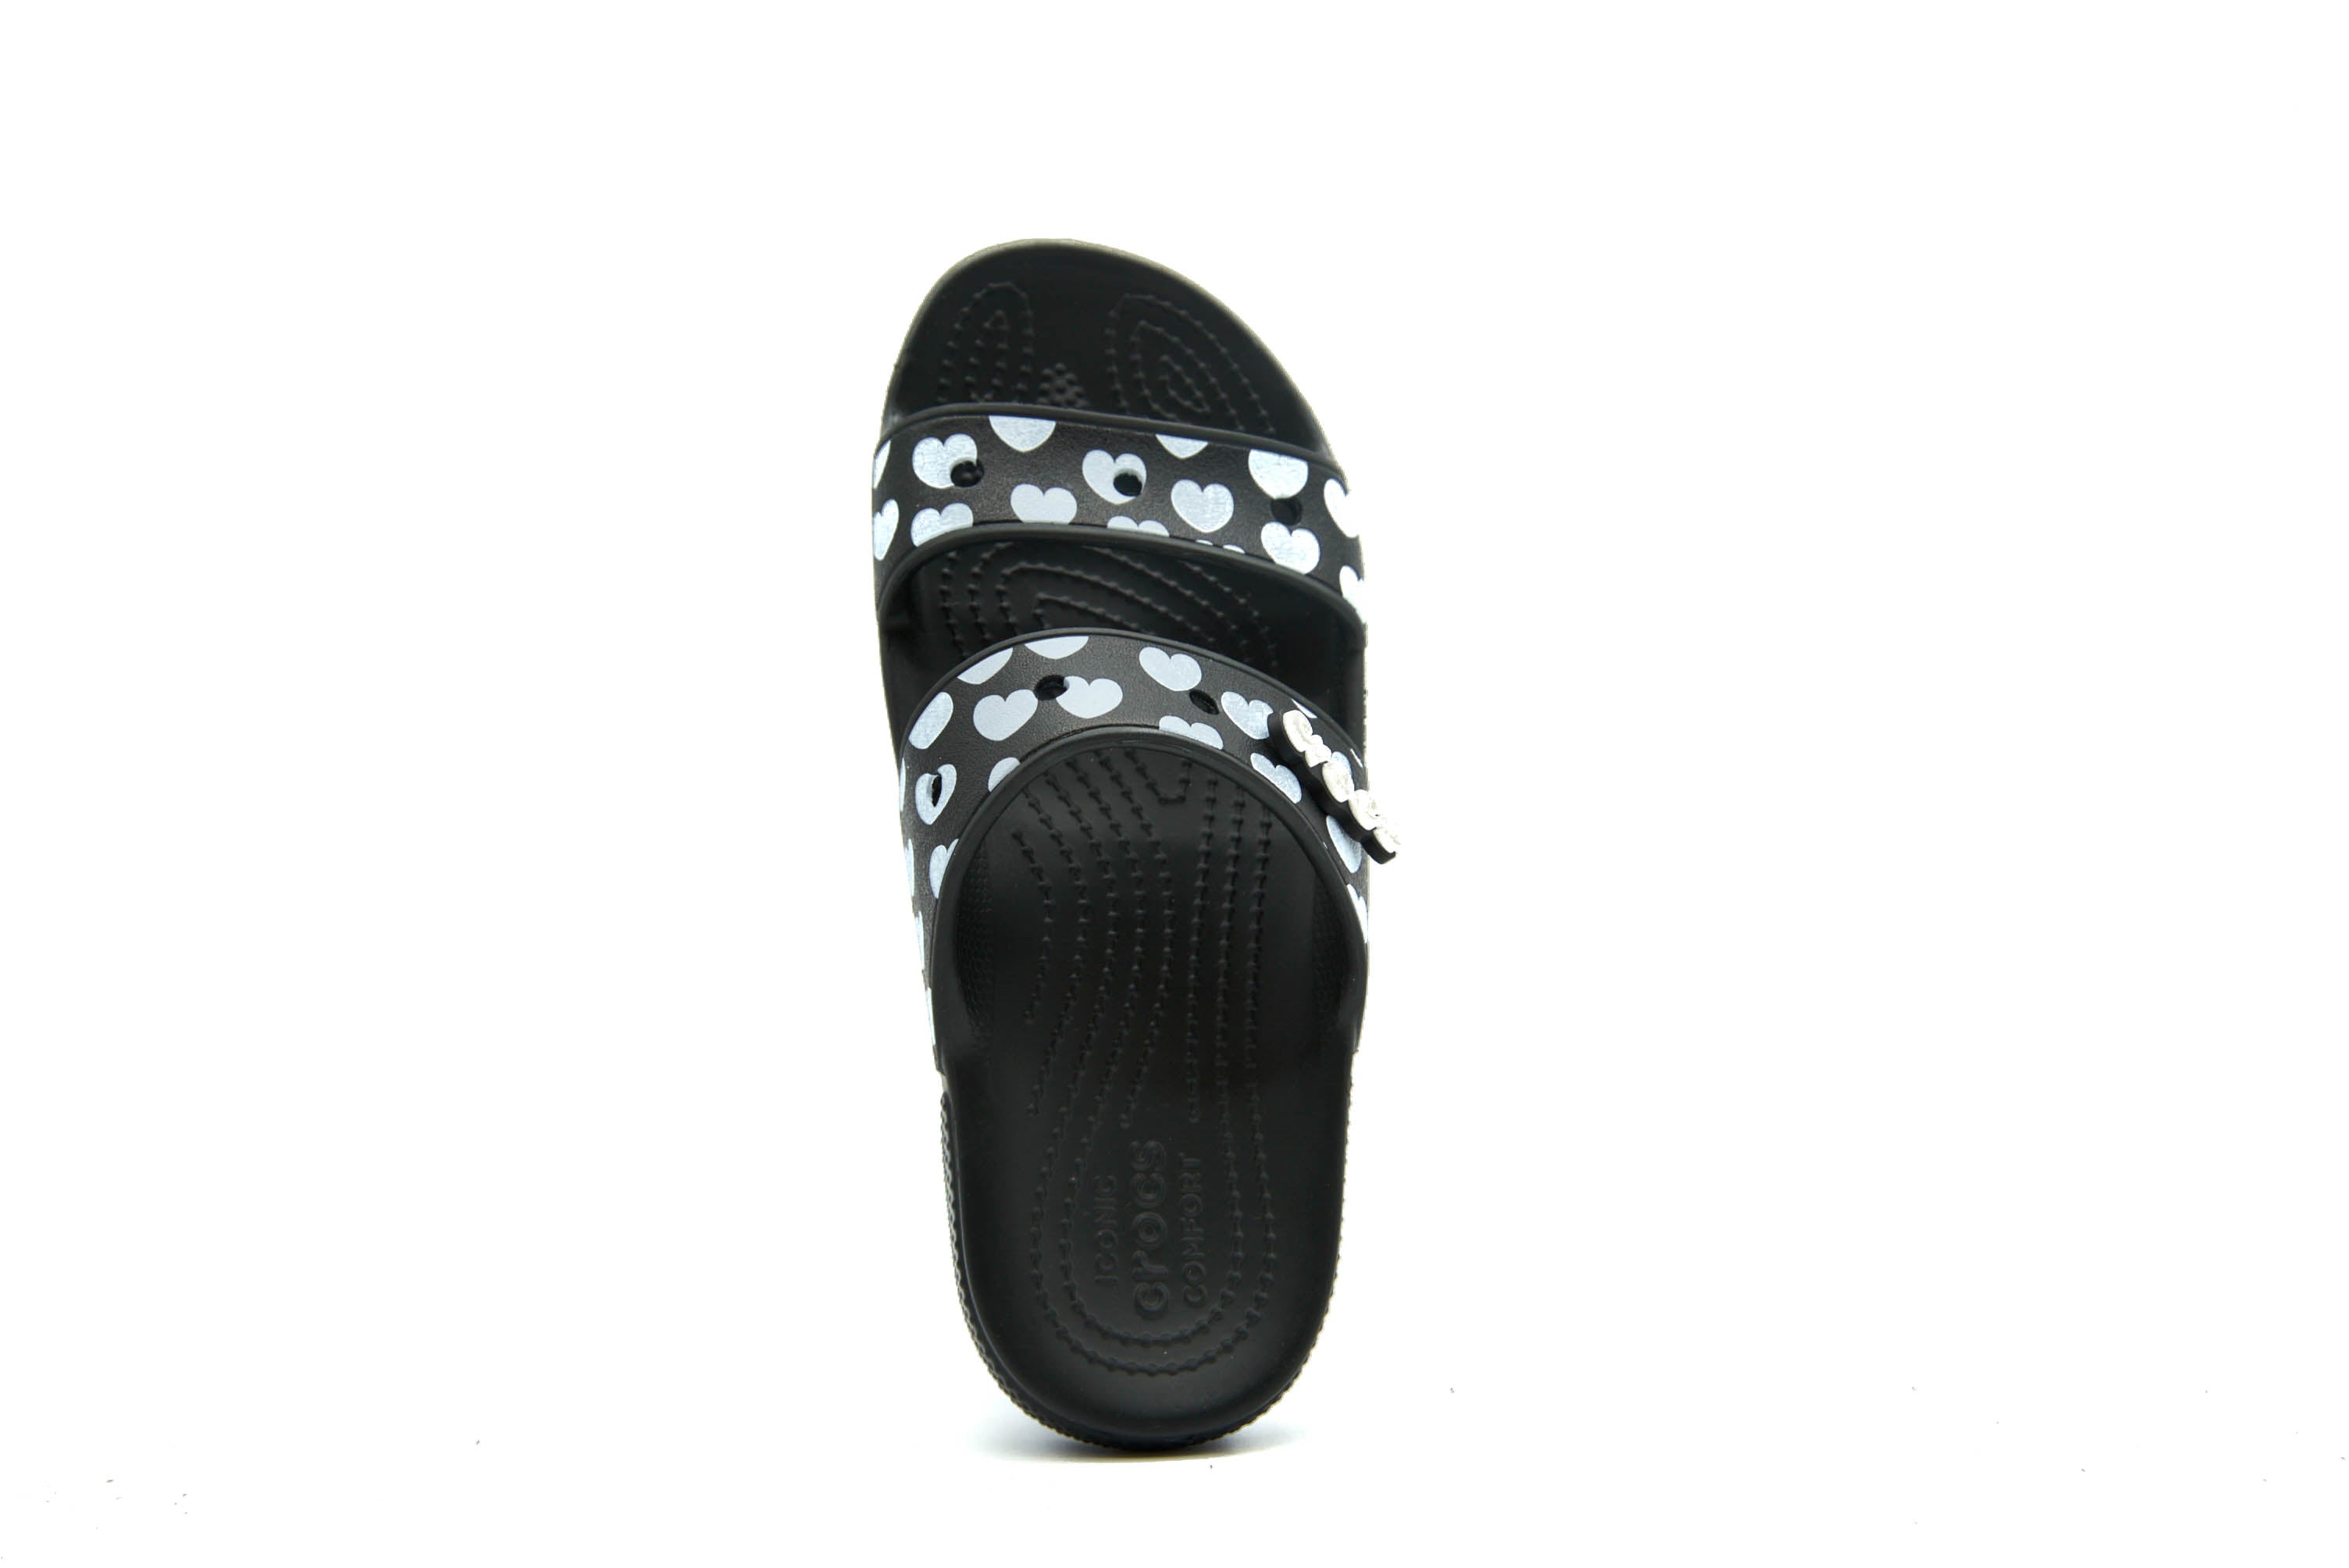 CROCS Classic Sandal